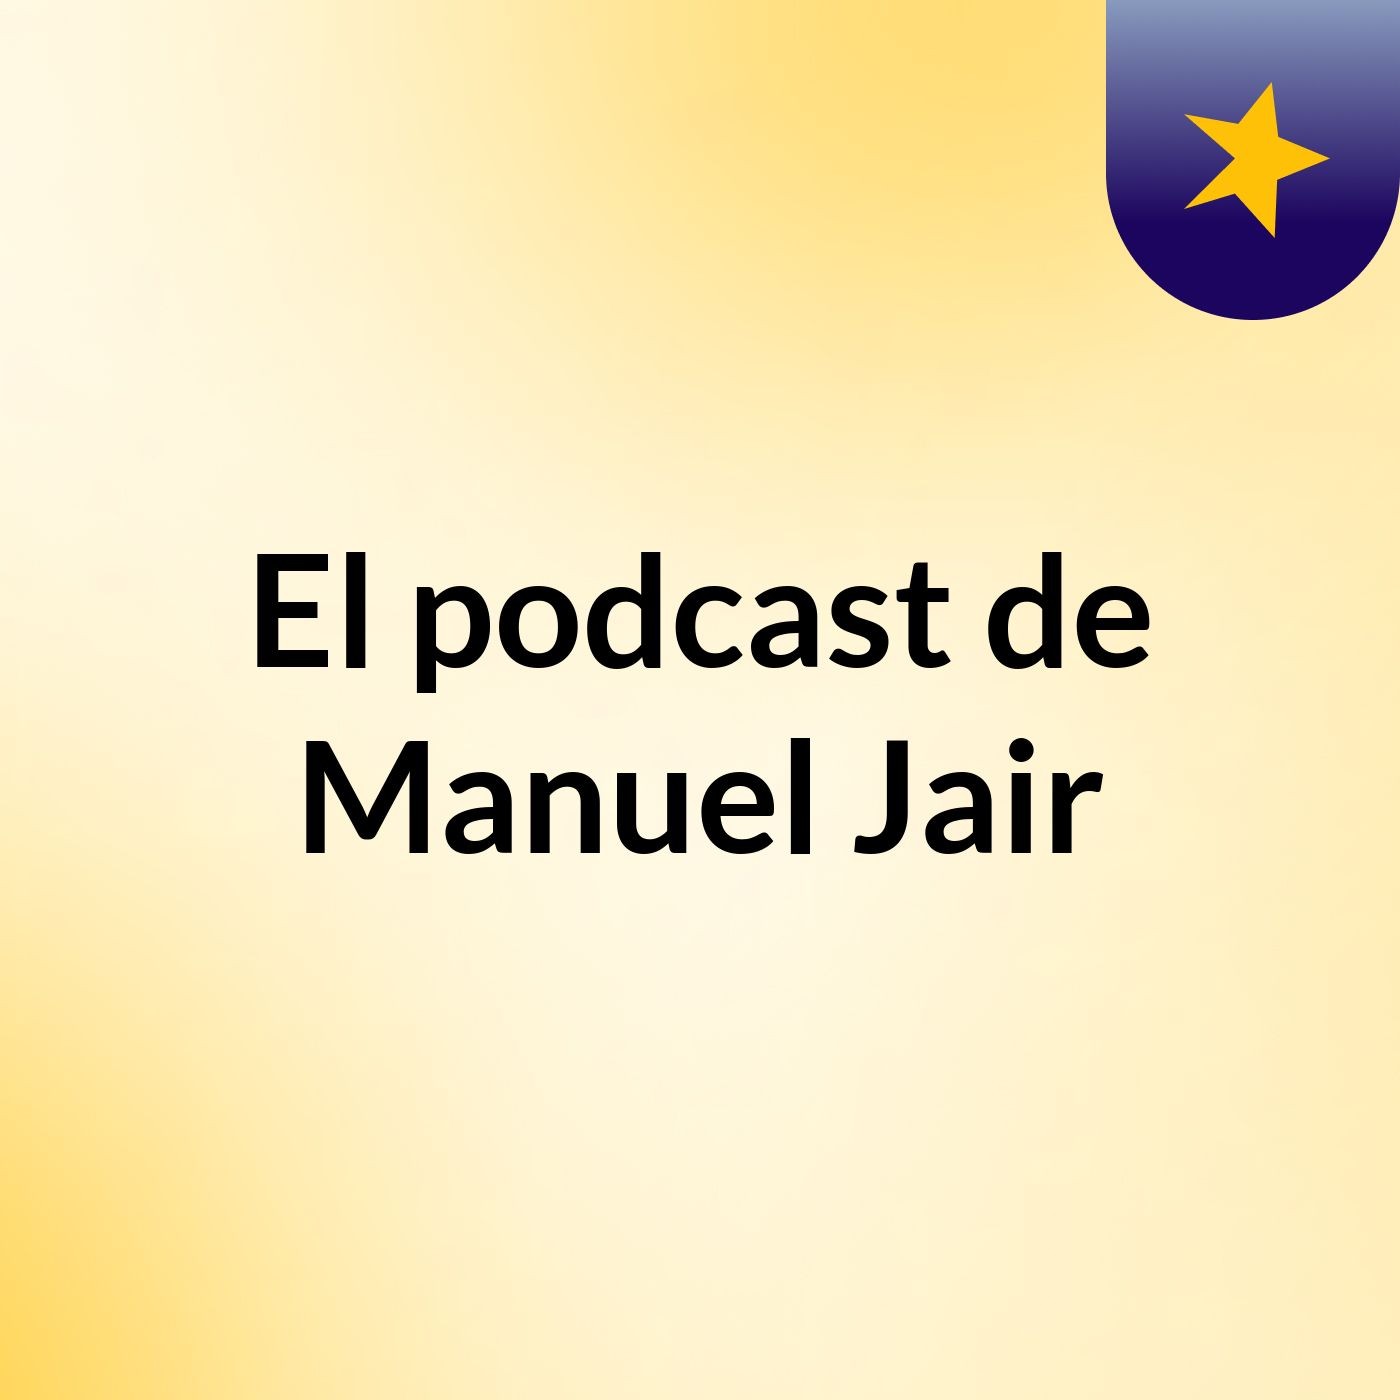 El podcast de Manuel Jair